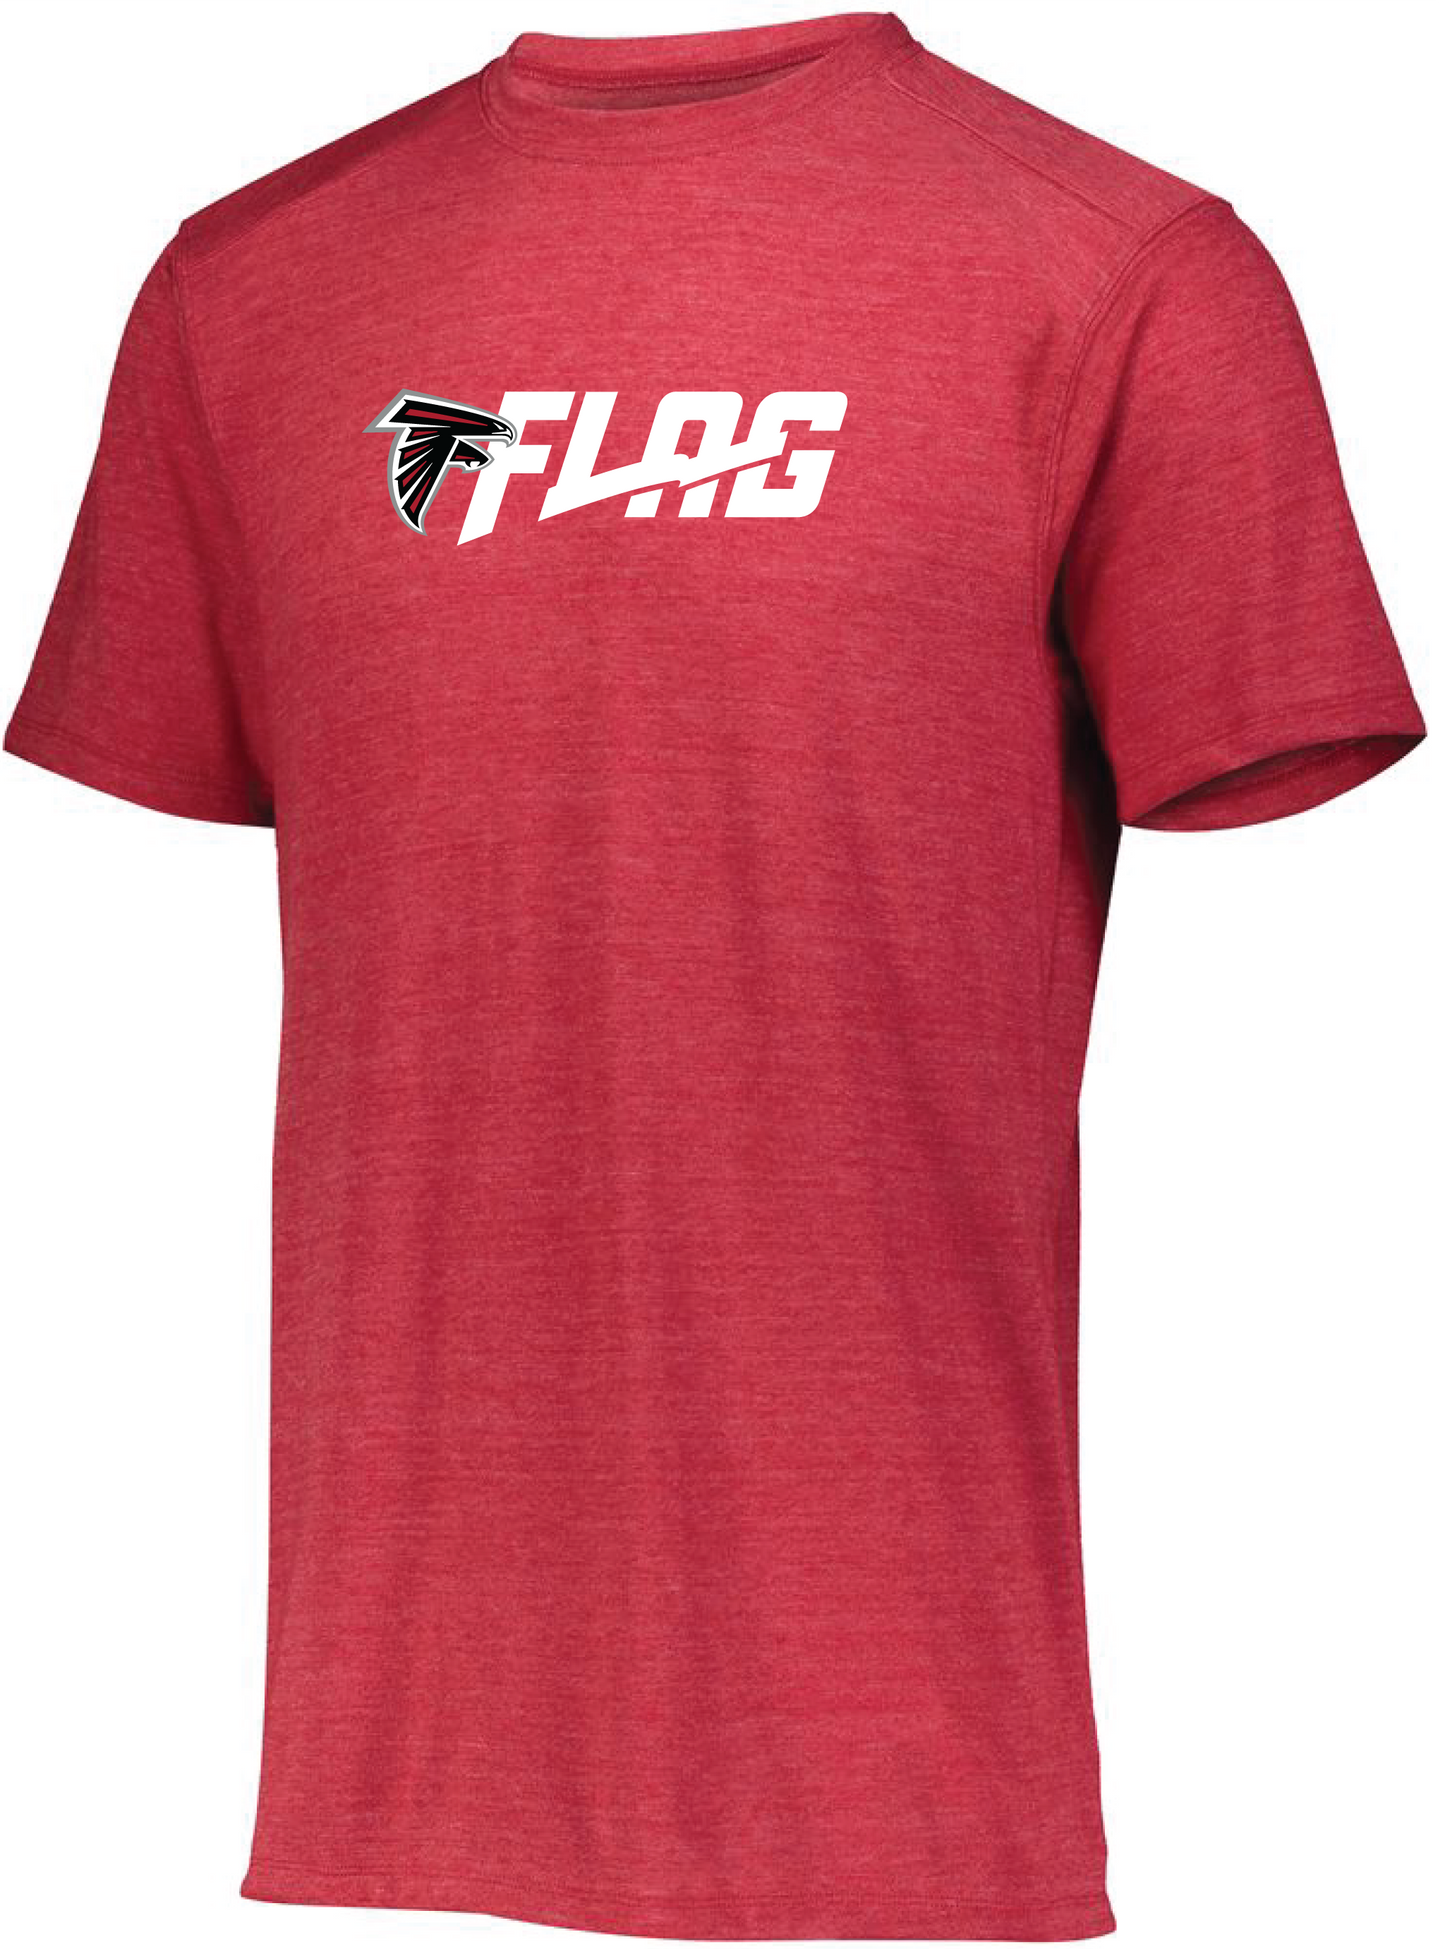 Tri Blend T Shirt - Adult - Atlanta Falcons